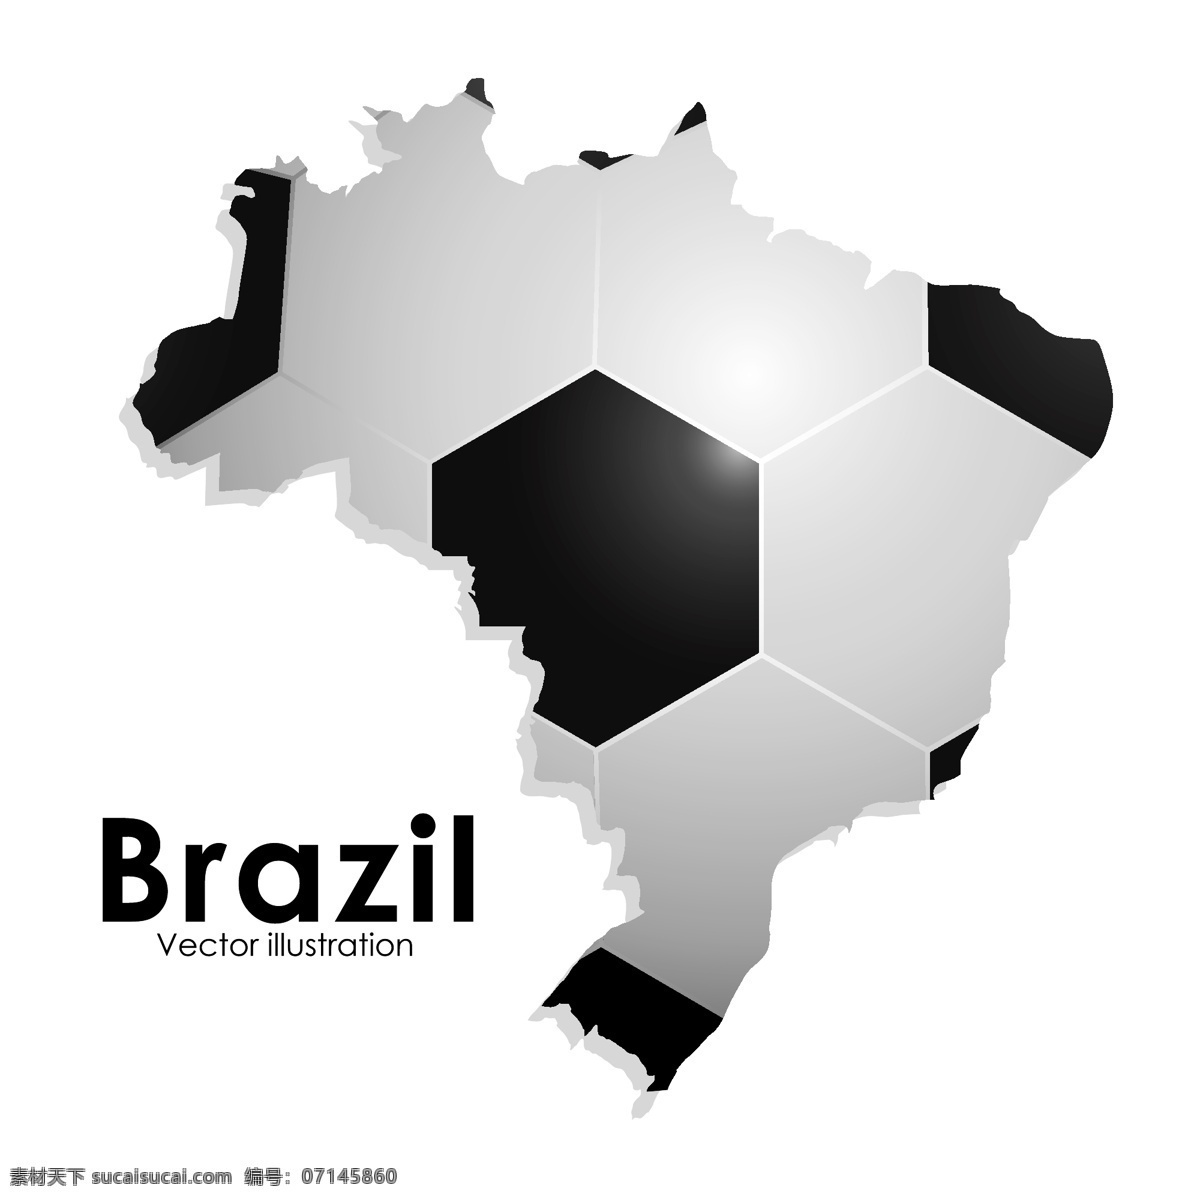 巴西 足球 背景 地图 模板下载 世界杯 体育运动 生活百科 矢量素材 白色